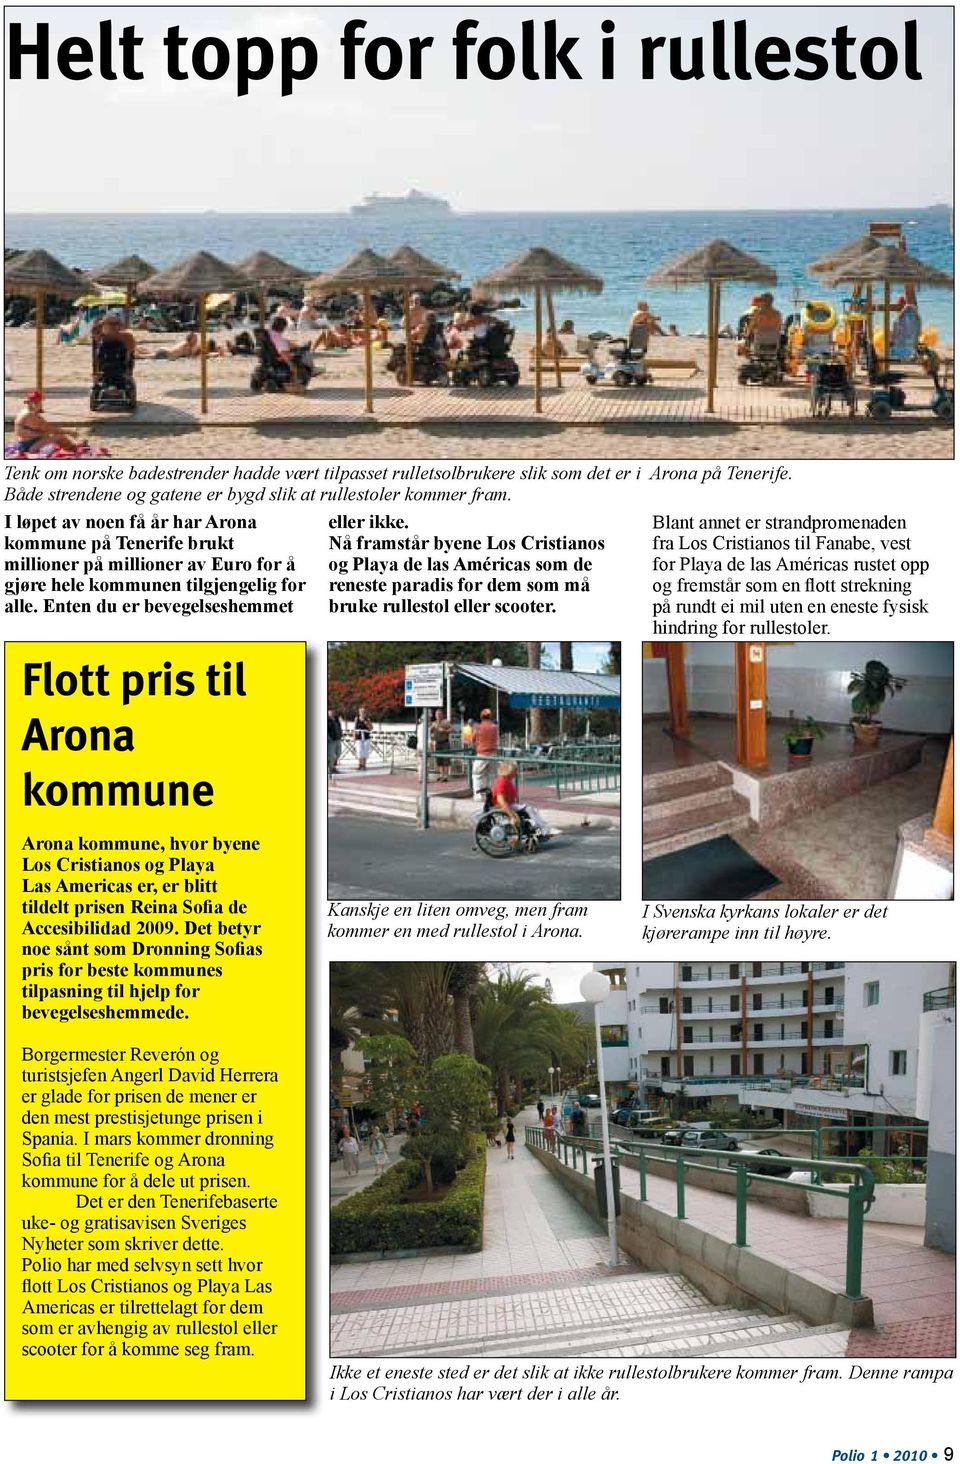 Enten du er bevegelseshemmet Flott pris til Arona kommune eller ikke. Nå framstår byene Los Cristianos og Playa de las Américas som de reneste paradis for dem som må bruke rullestol eller scooter.